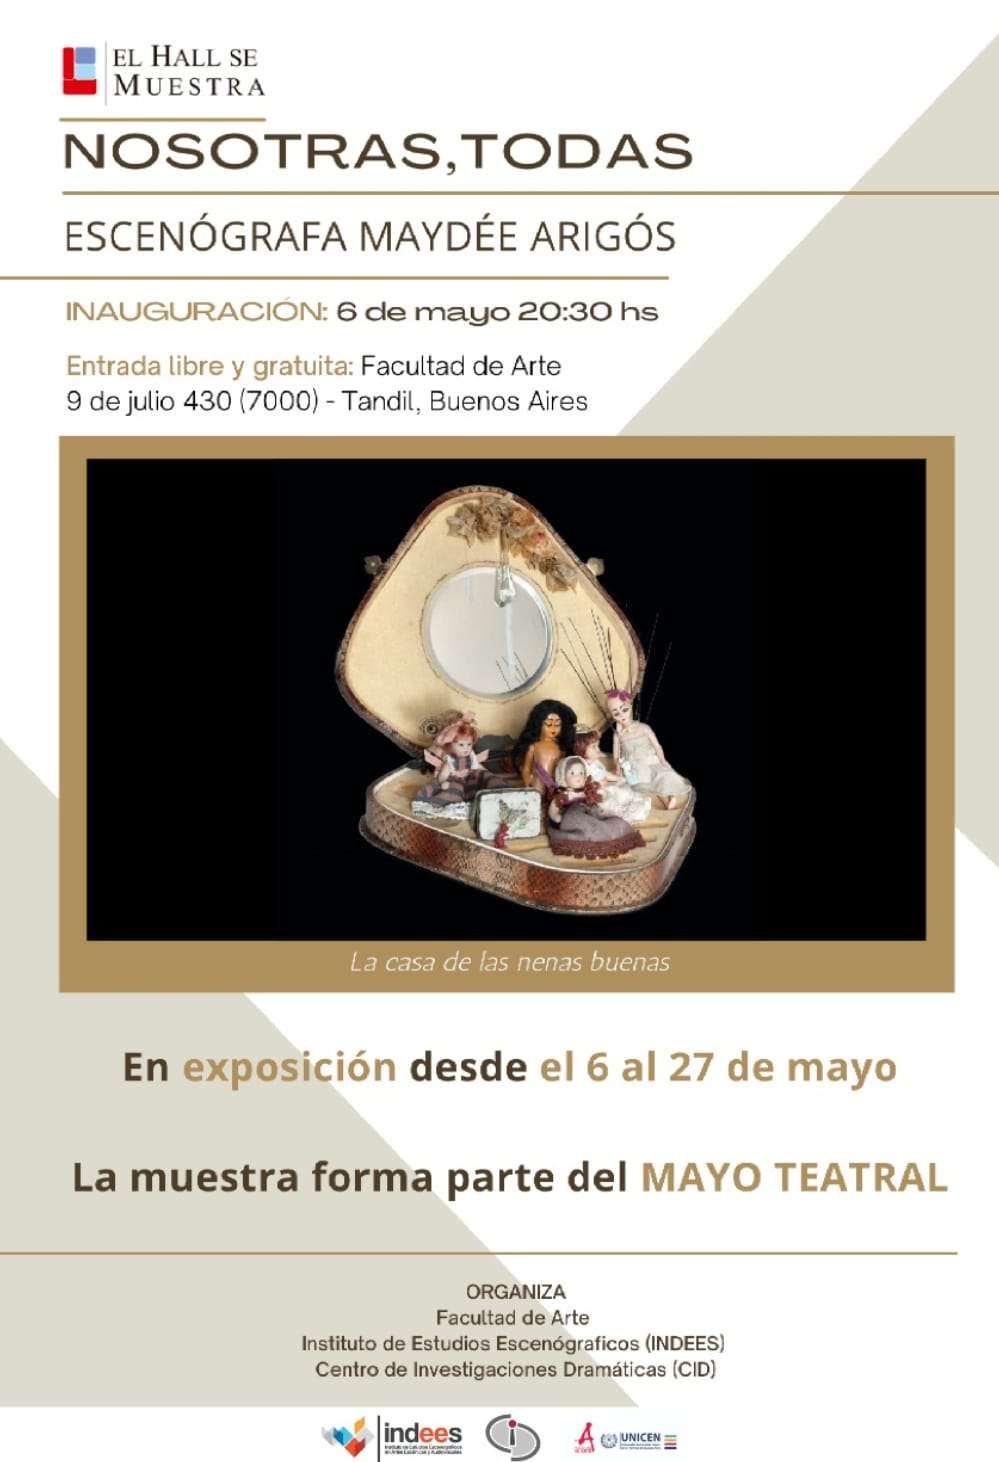 Mayo Teatral: Del 6 al 27 de mayo se expondrá "Nosotras, Todas"